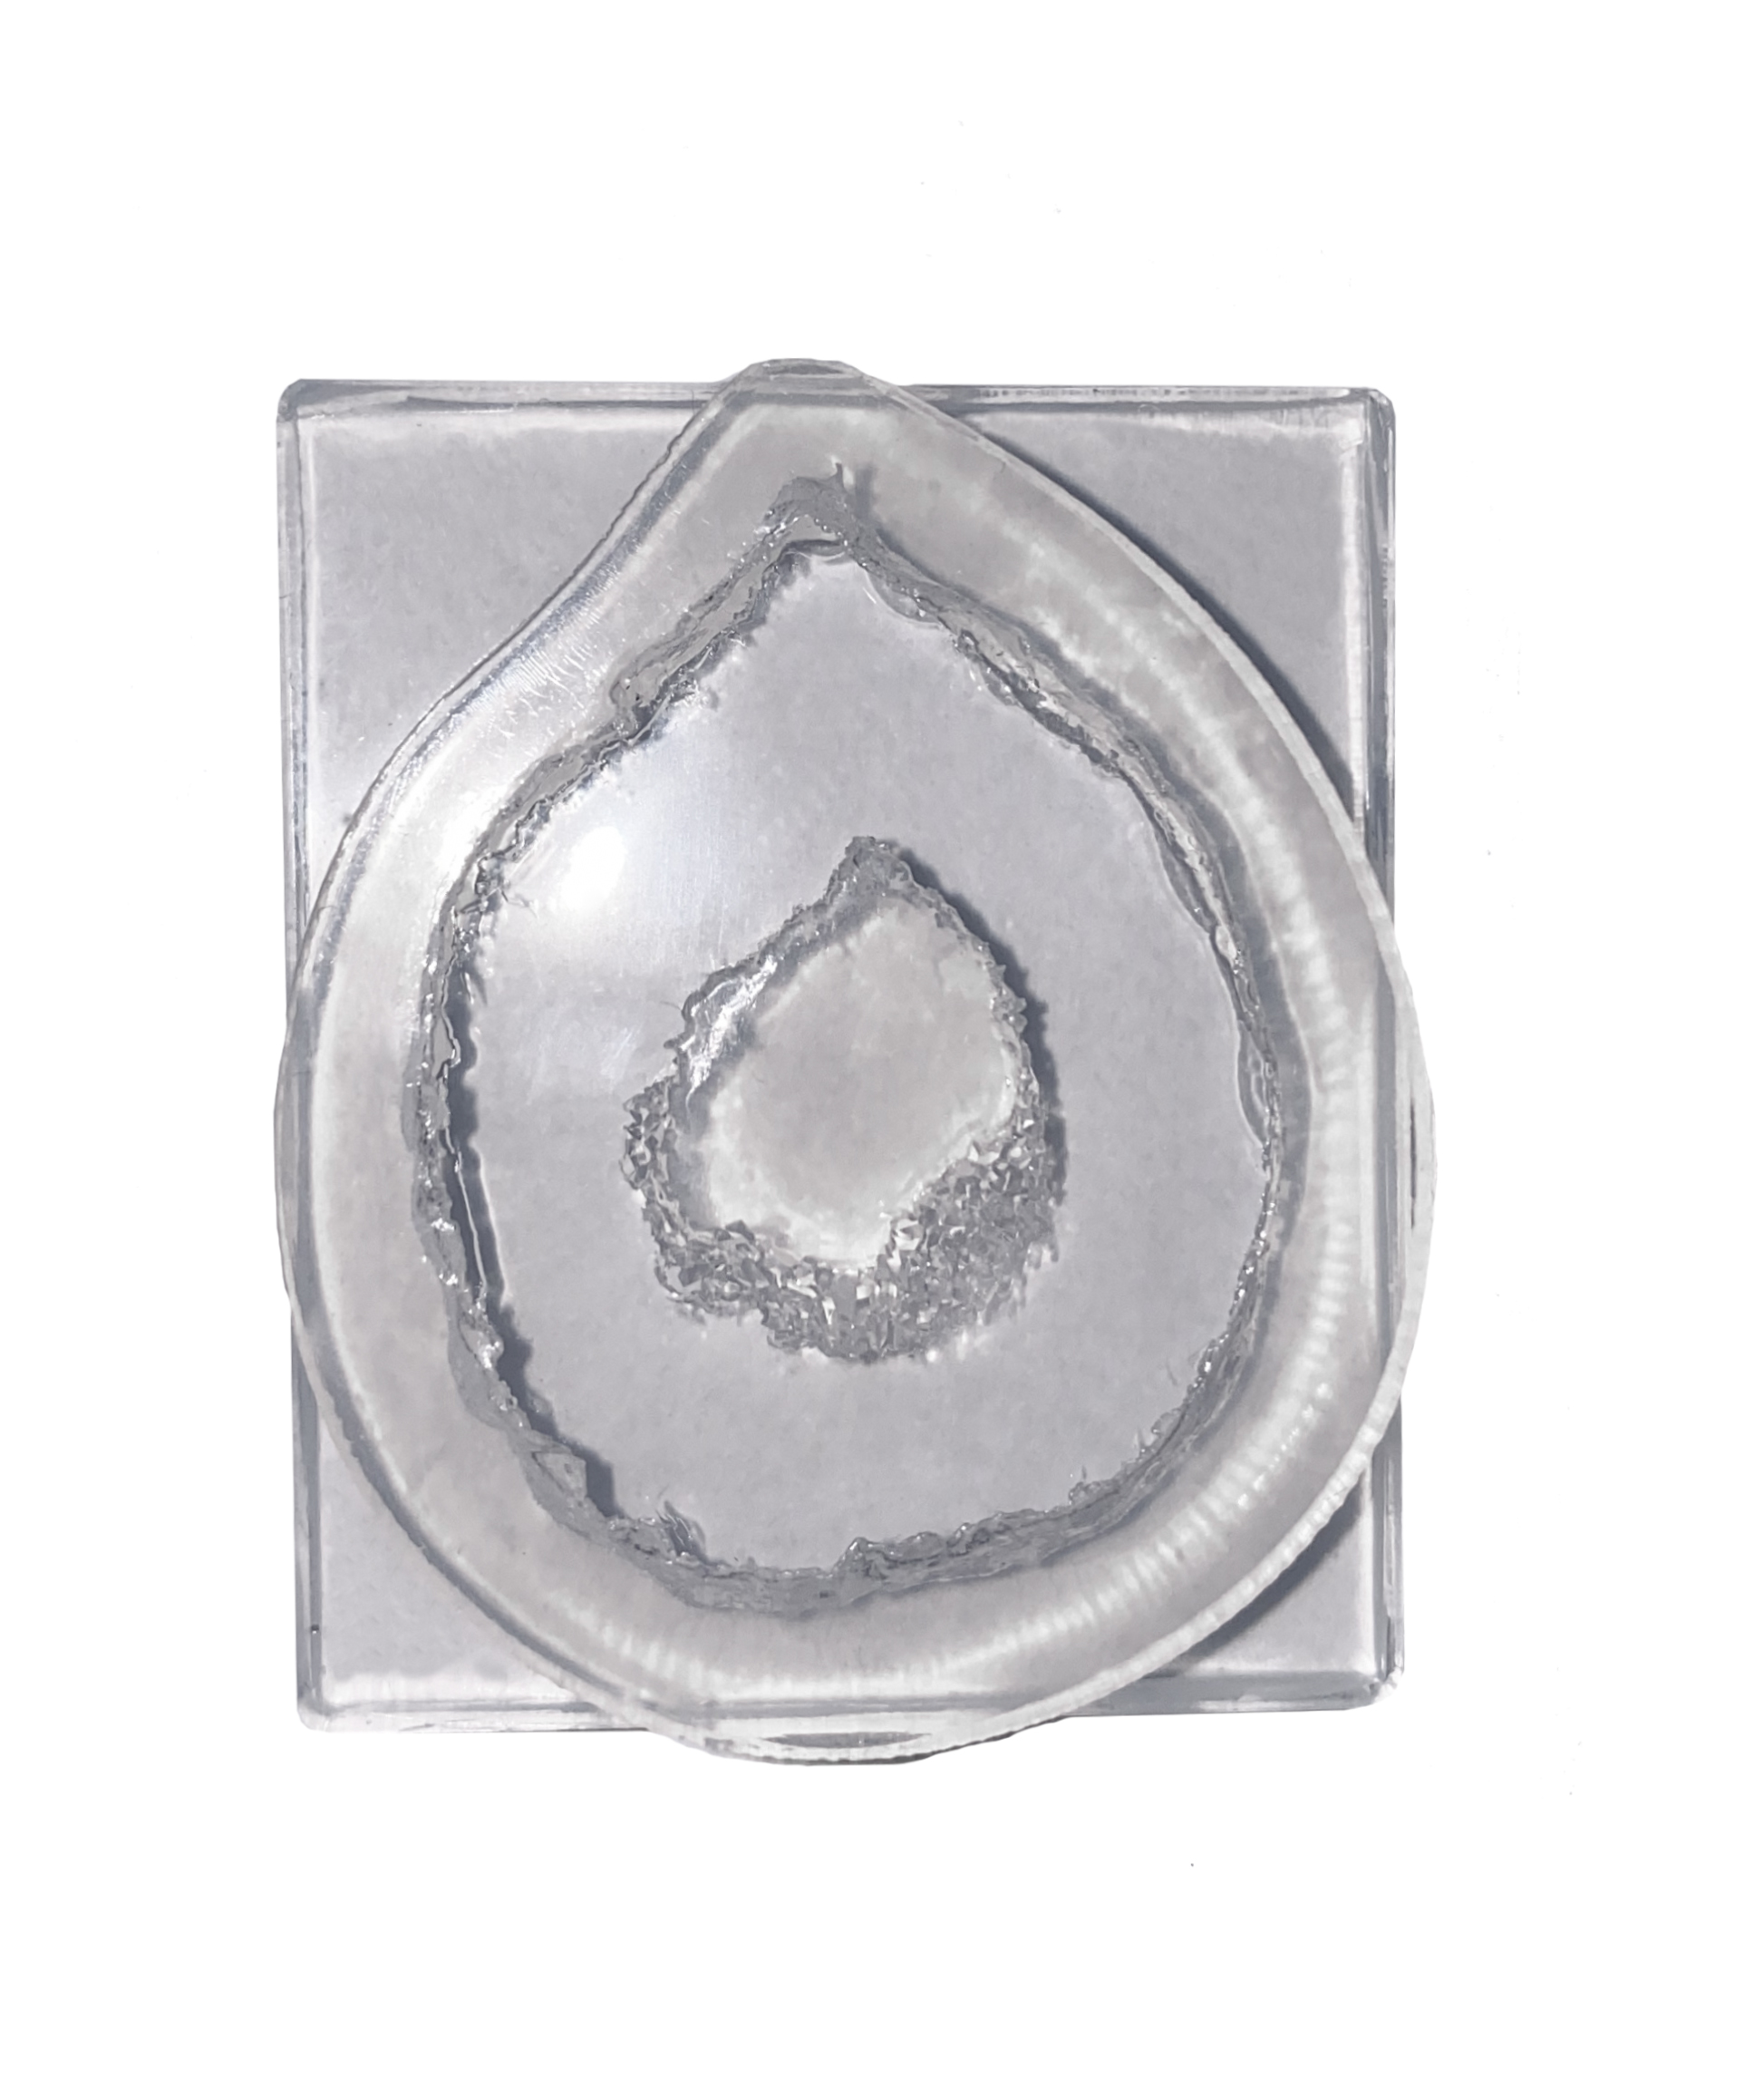 Silikongießform Geodenachat Agate Slice 3,5x2,5cm Schmuckanhänger